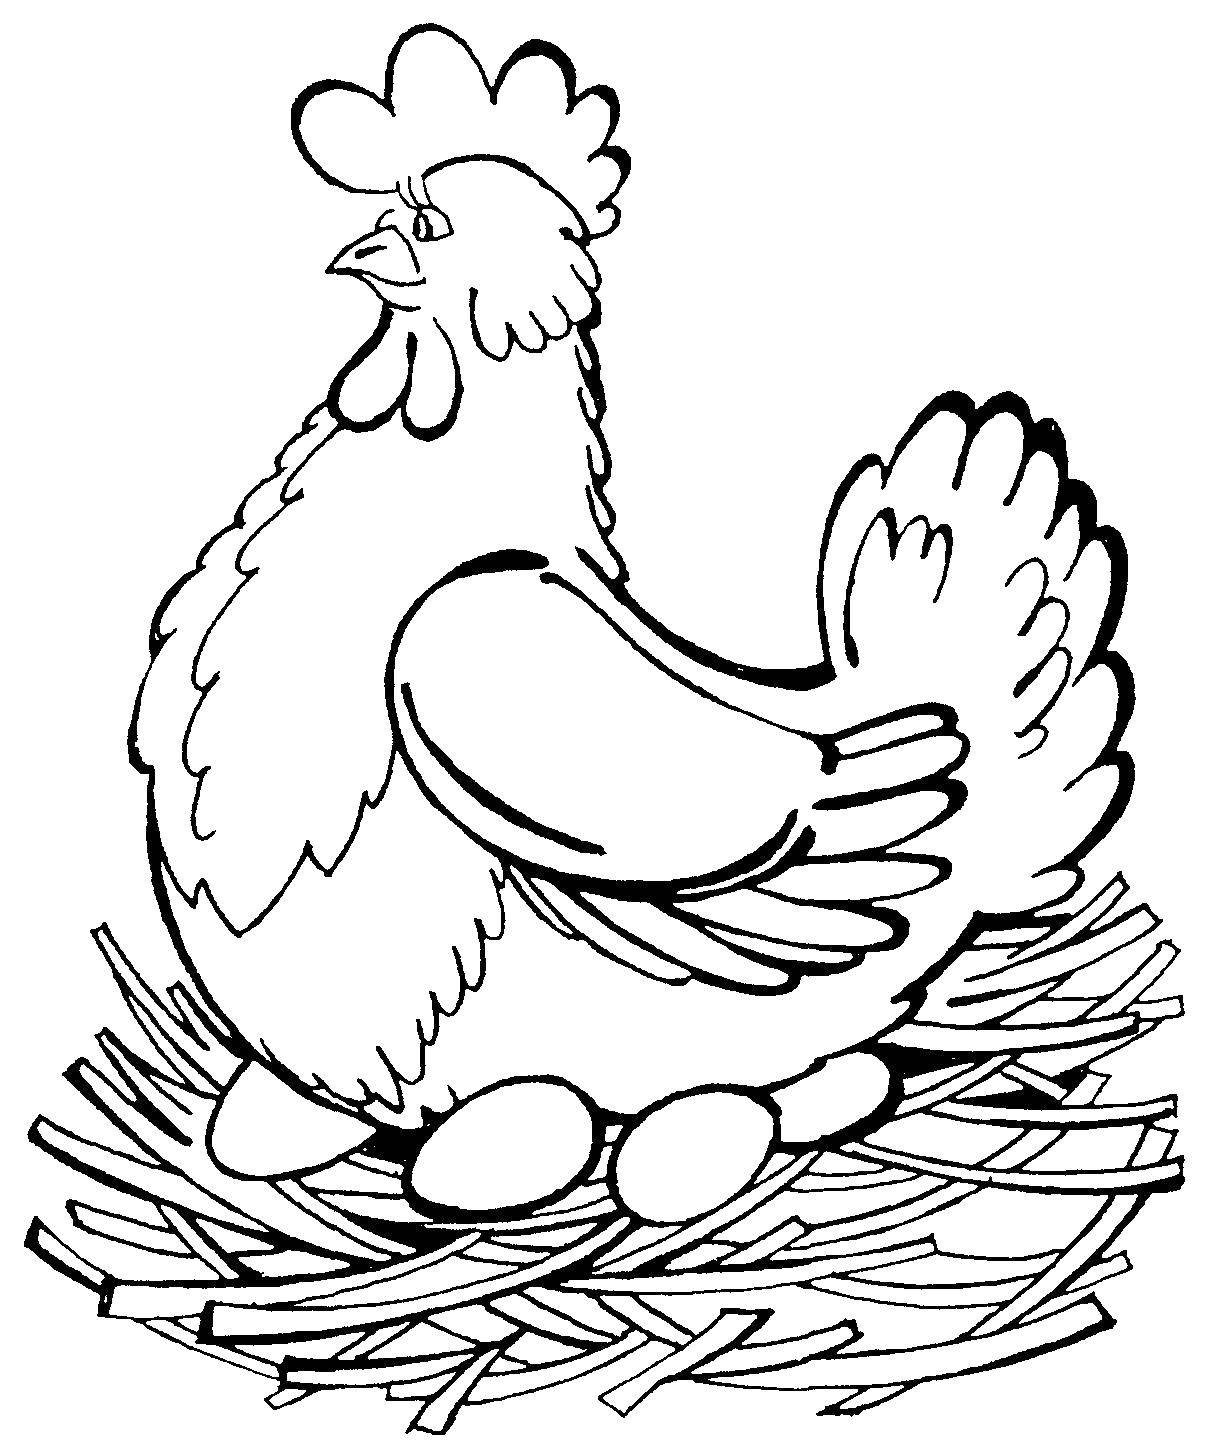 Название: Раскраска Курица снесла яйца в гнезде. Категория: курочка ряба. Теги: Курица, птица.